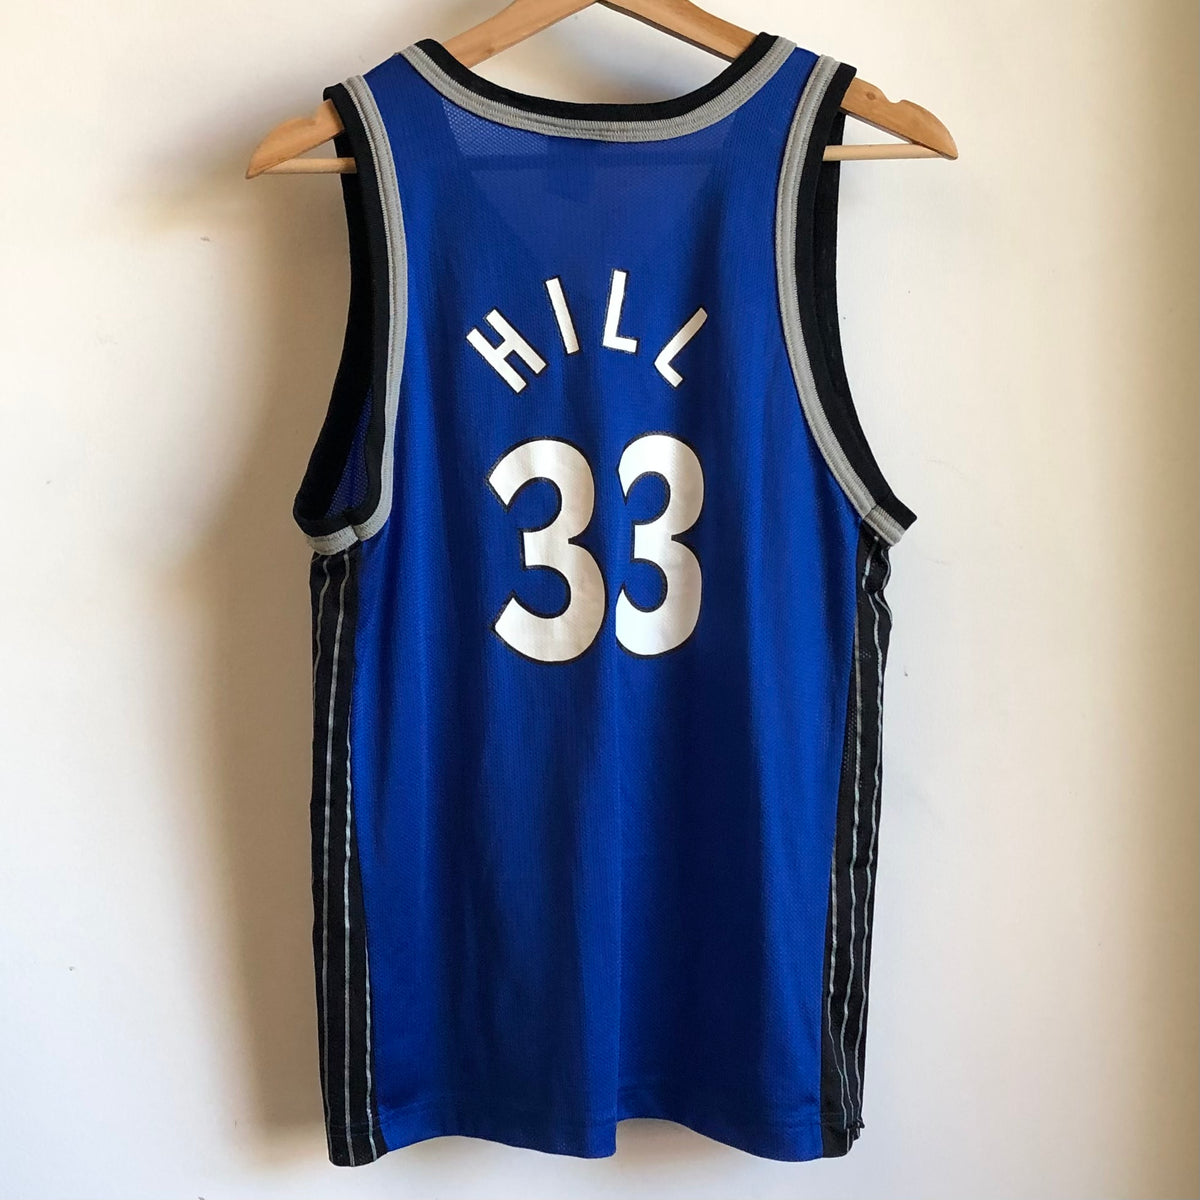 Size 48. 33 Hill Pistons 90s Champion NBA Jersey 